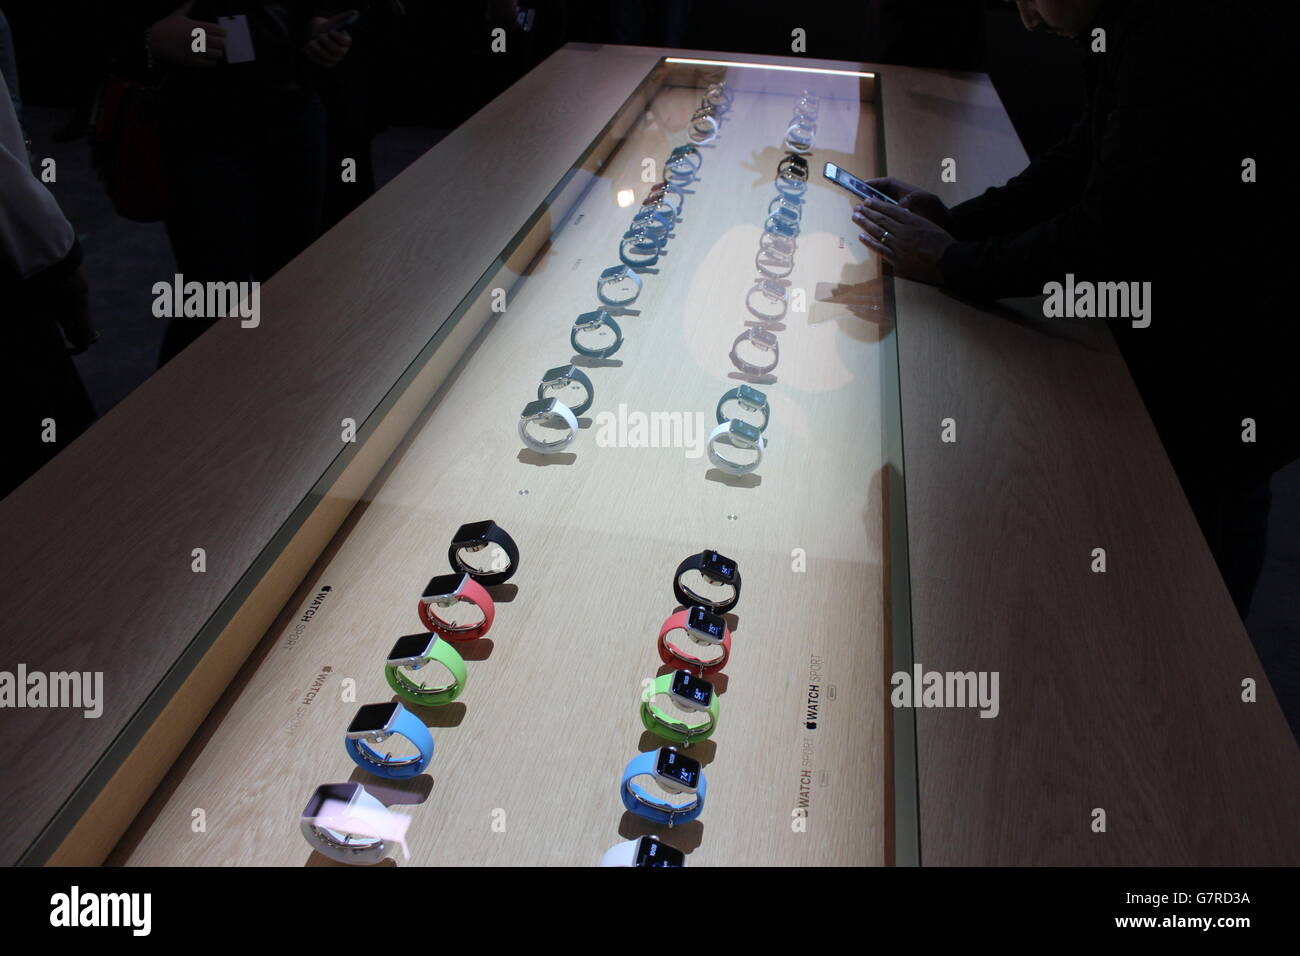 Différents styles de la nouvelle montre Apple Watch Sport exposés lors d'un événement Apple à Berlin, en Allemagne, après la présentation de nouveaux produits par la société informatique. Banque D'Images